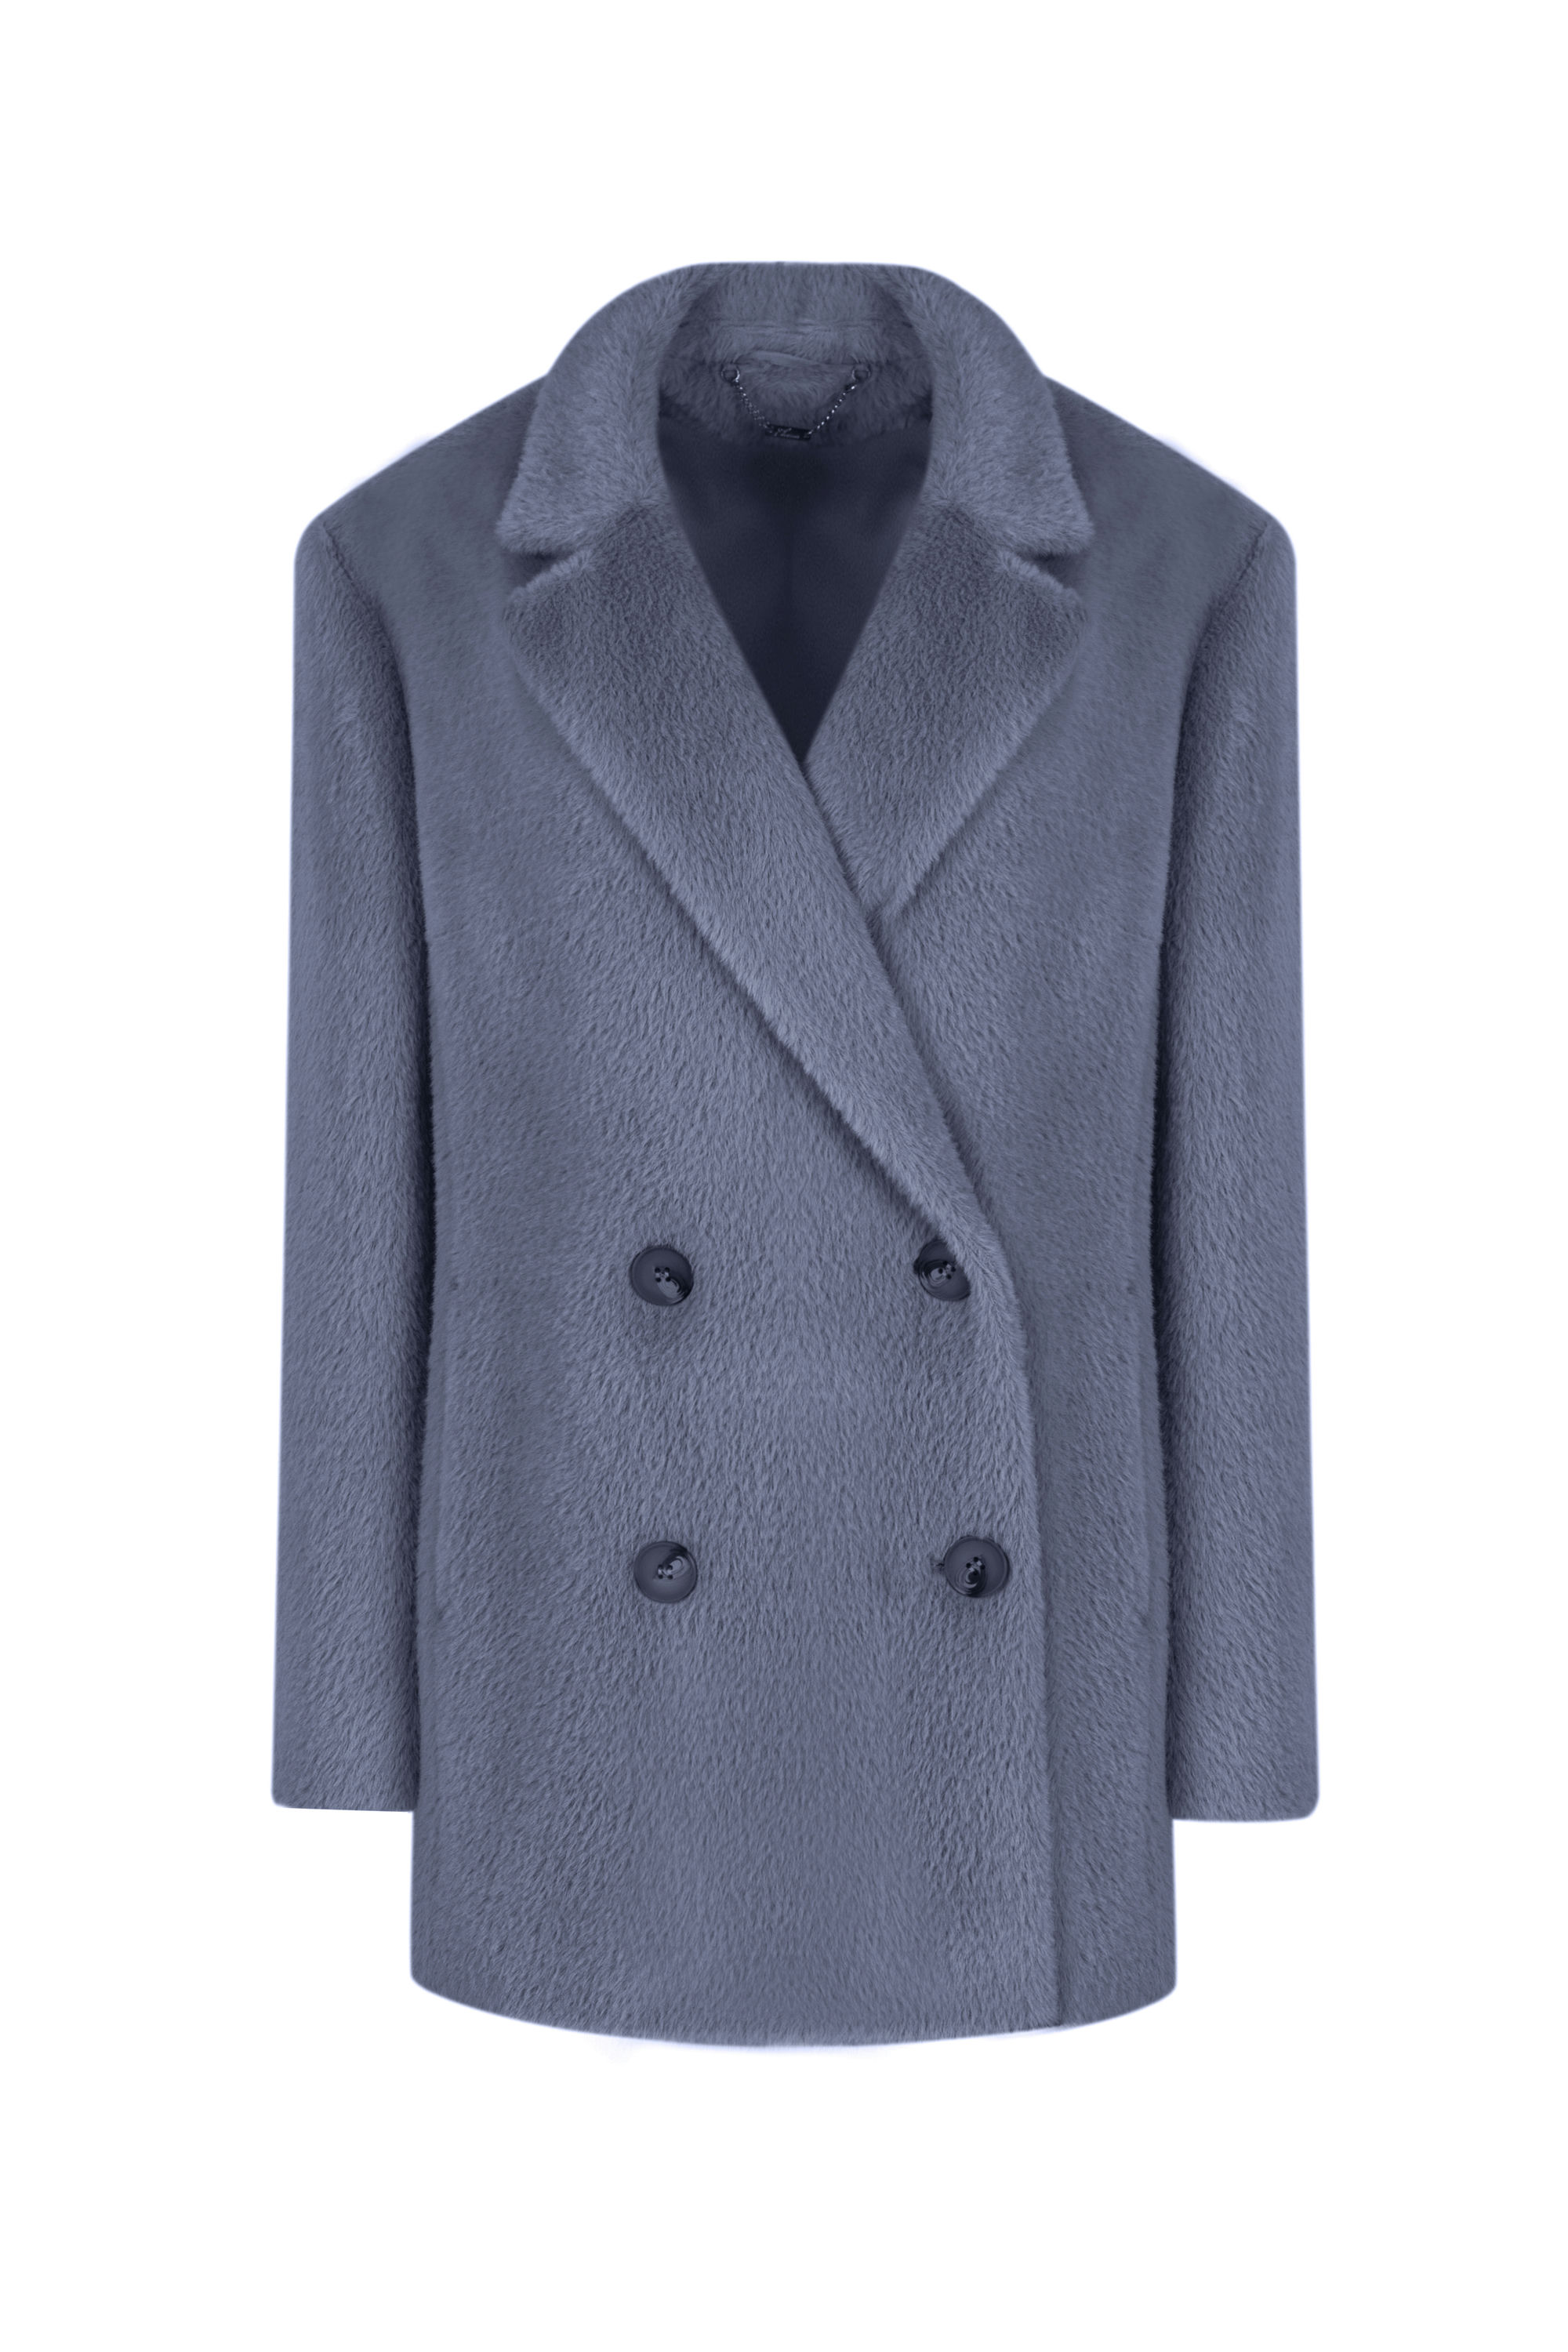 Пальто женское демисезонное 1-589. Фото 1.